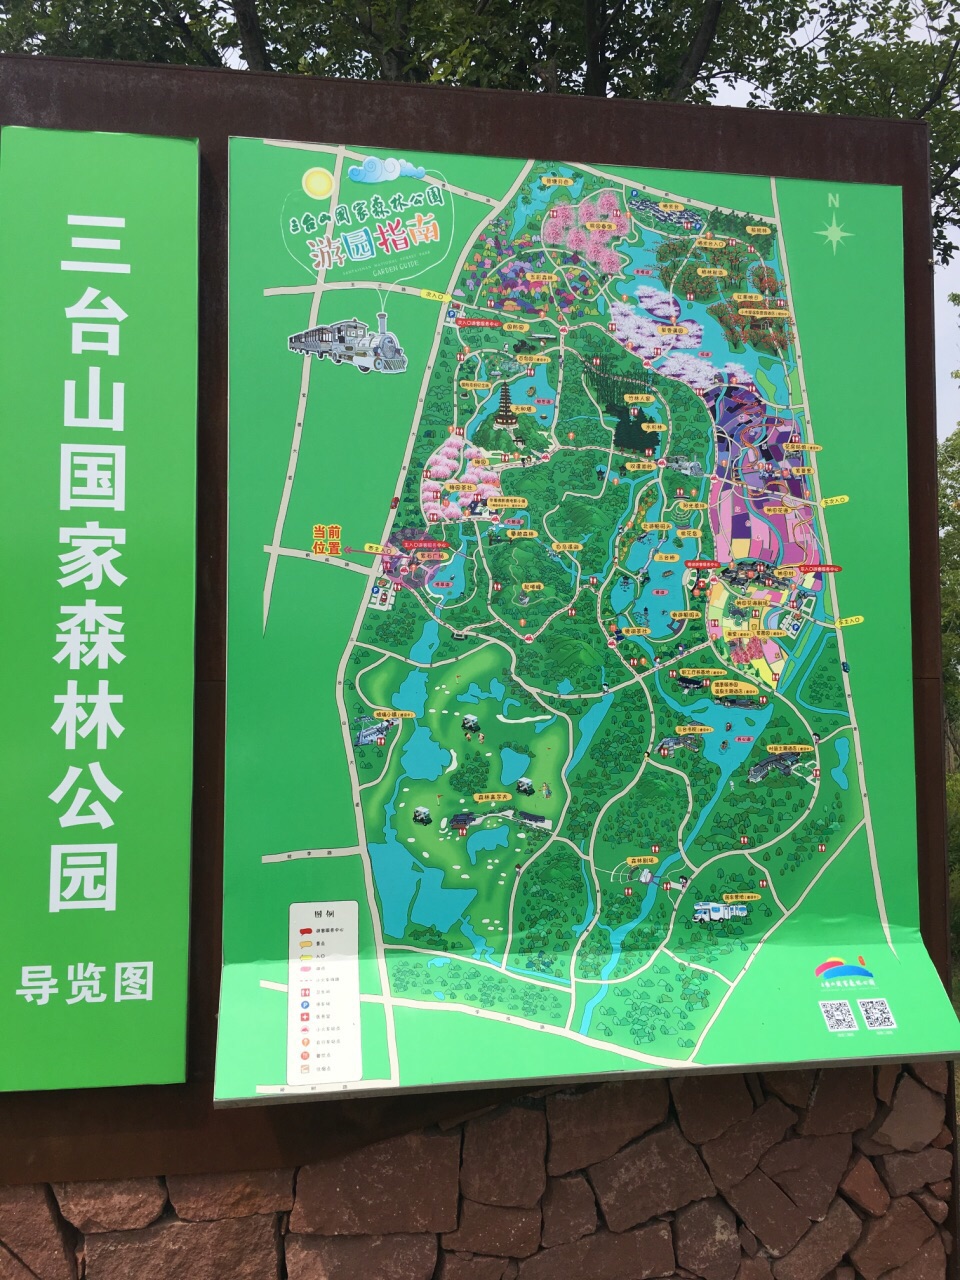 三台山公园平面图图片